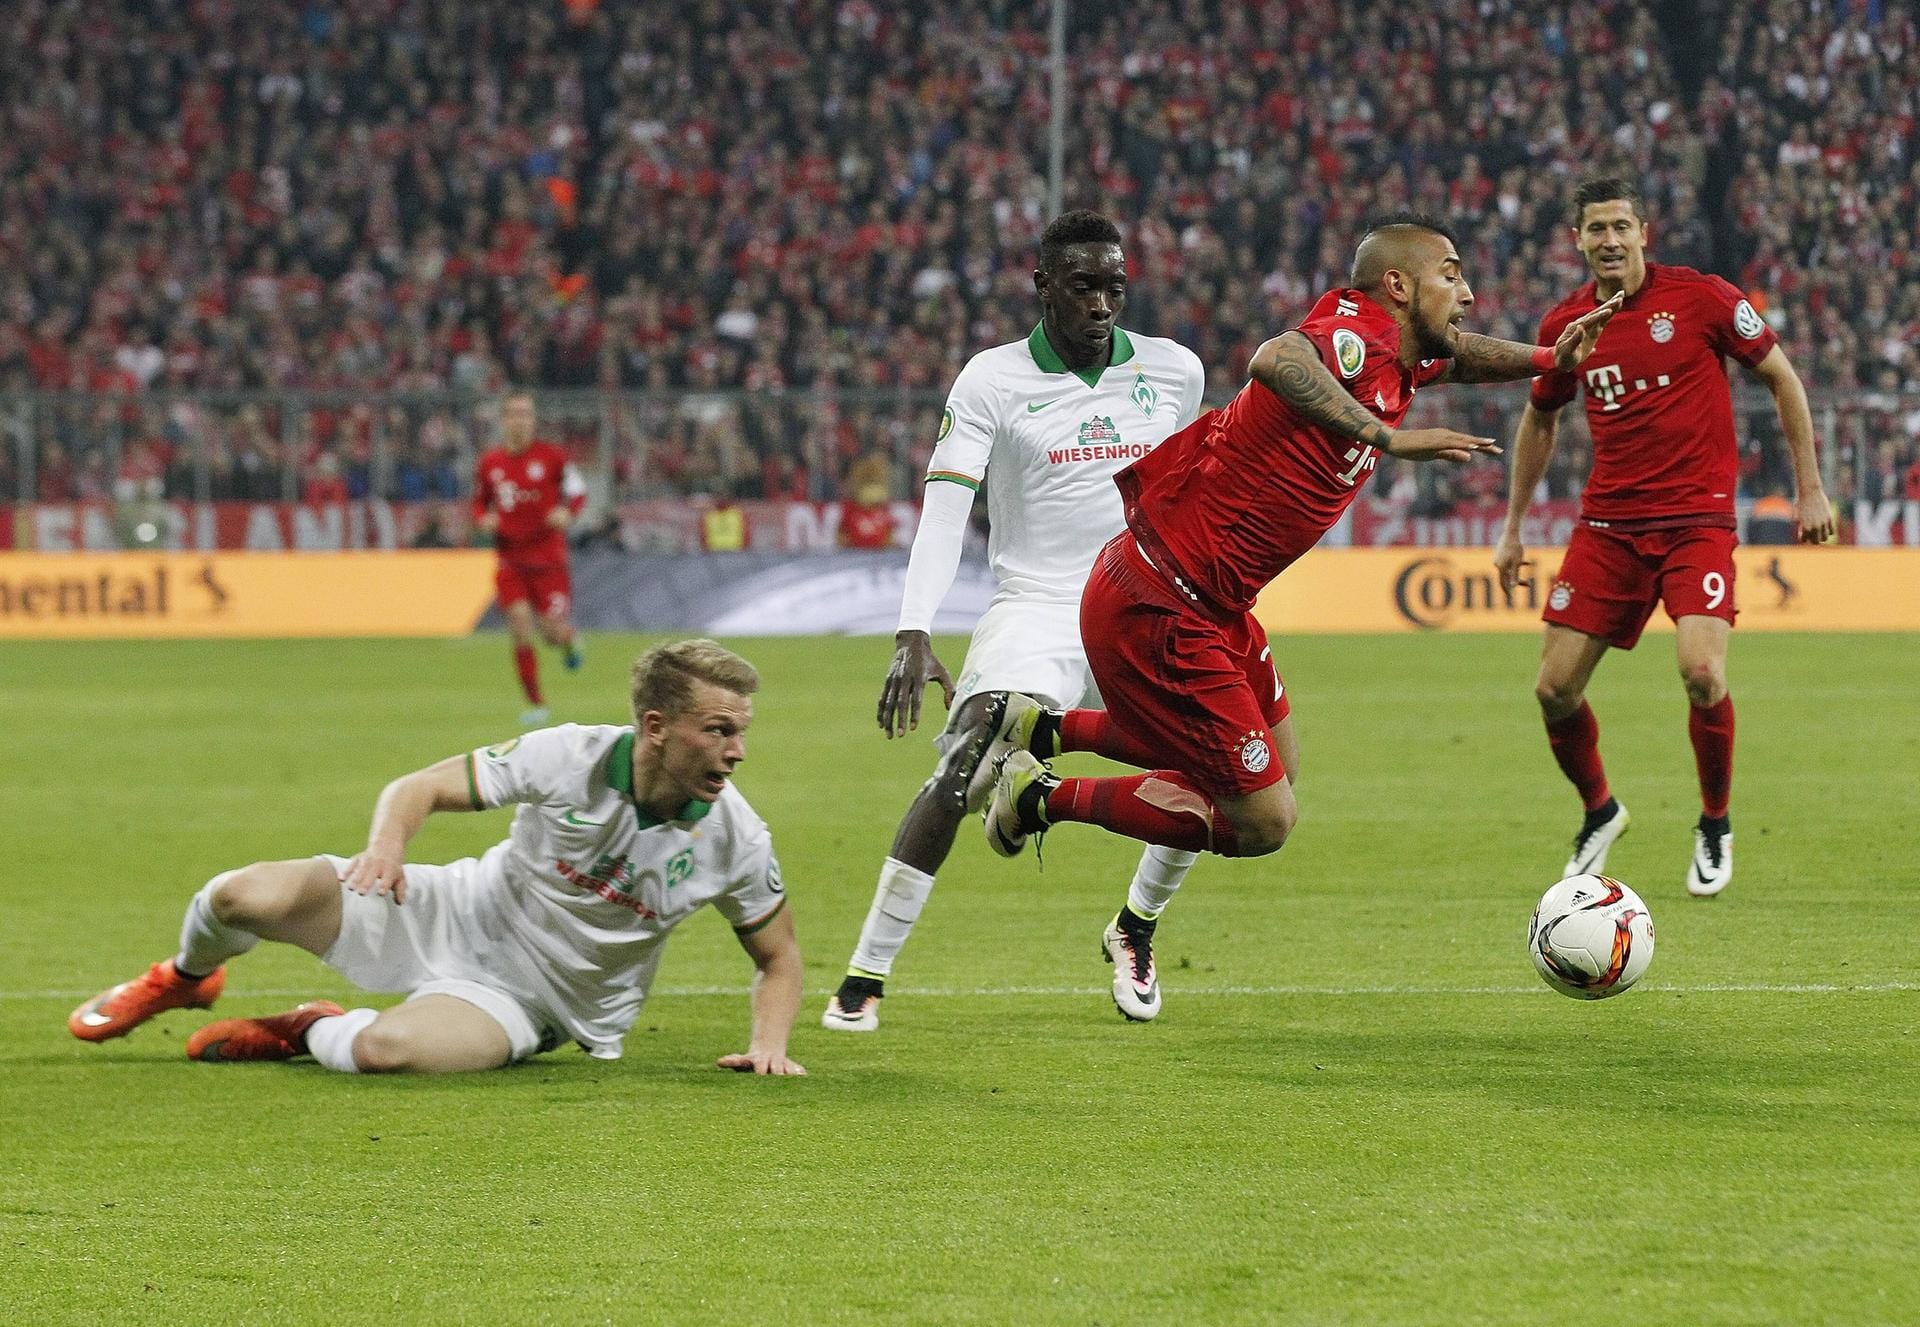 "Es war eine Schwalbe", sagte auch Doppeltorschütze Thomas Müller nach dem Spiel.